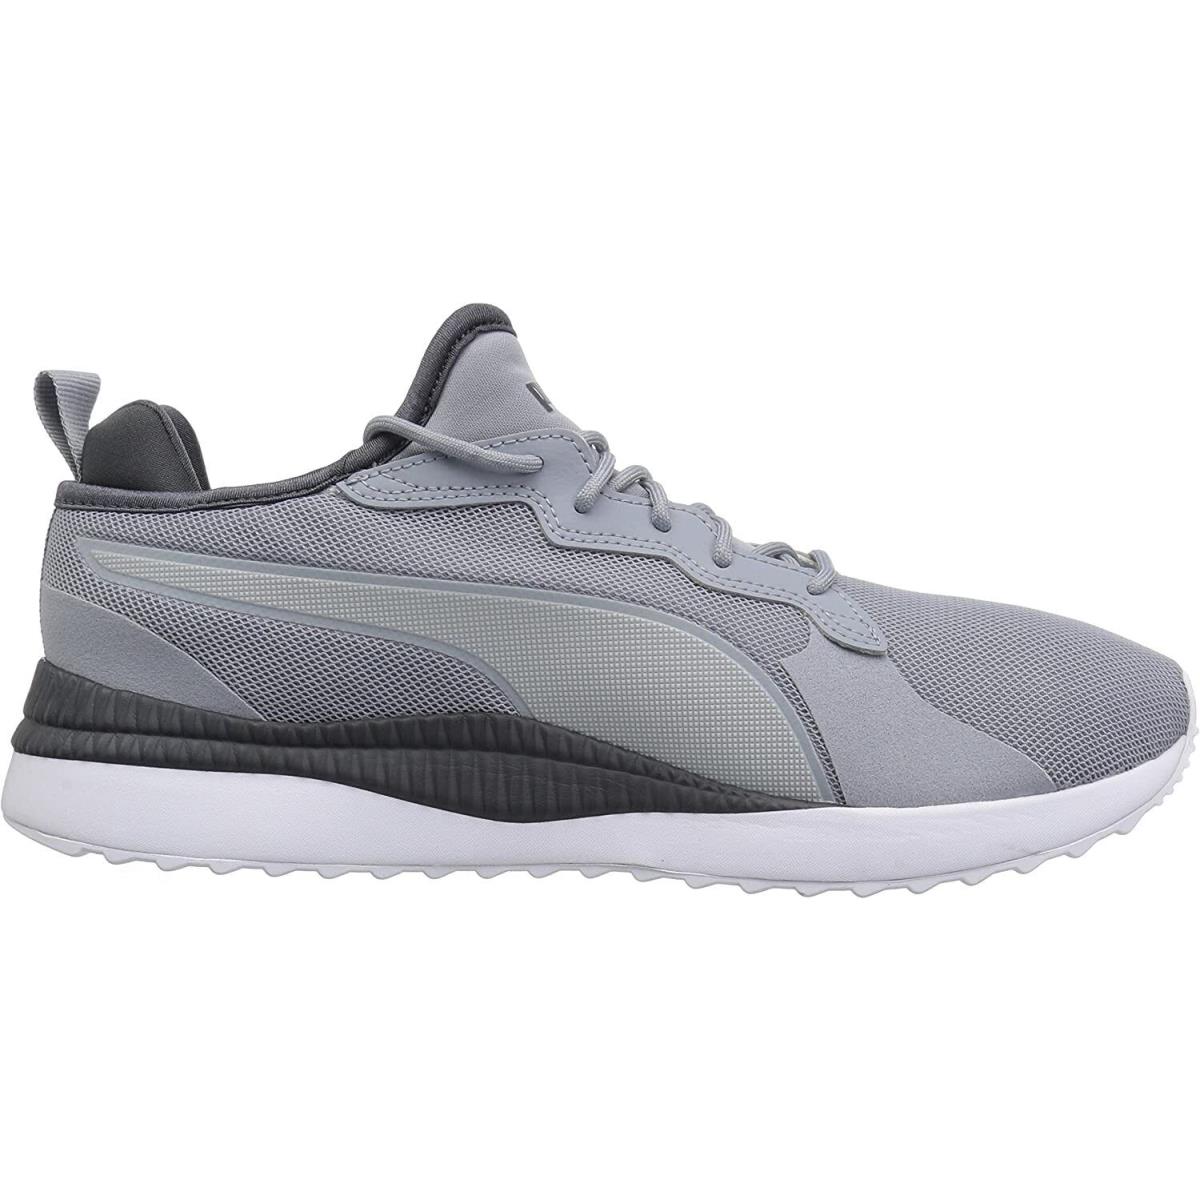 Puma shoes Pacer next - Grey/Asphalt 0